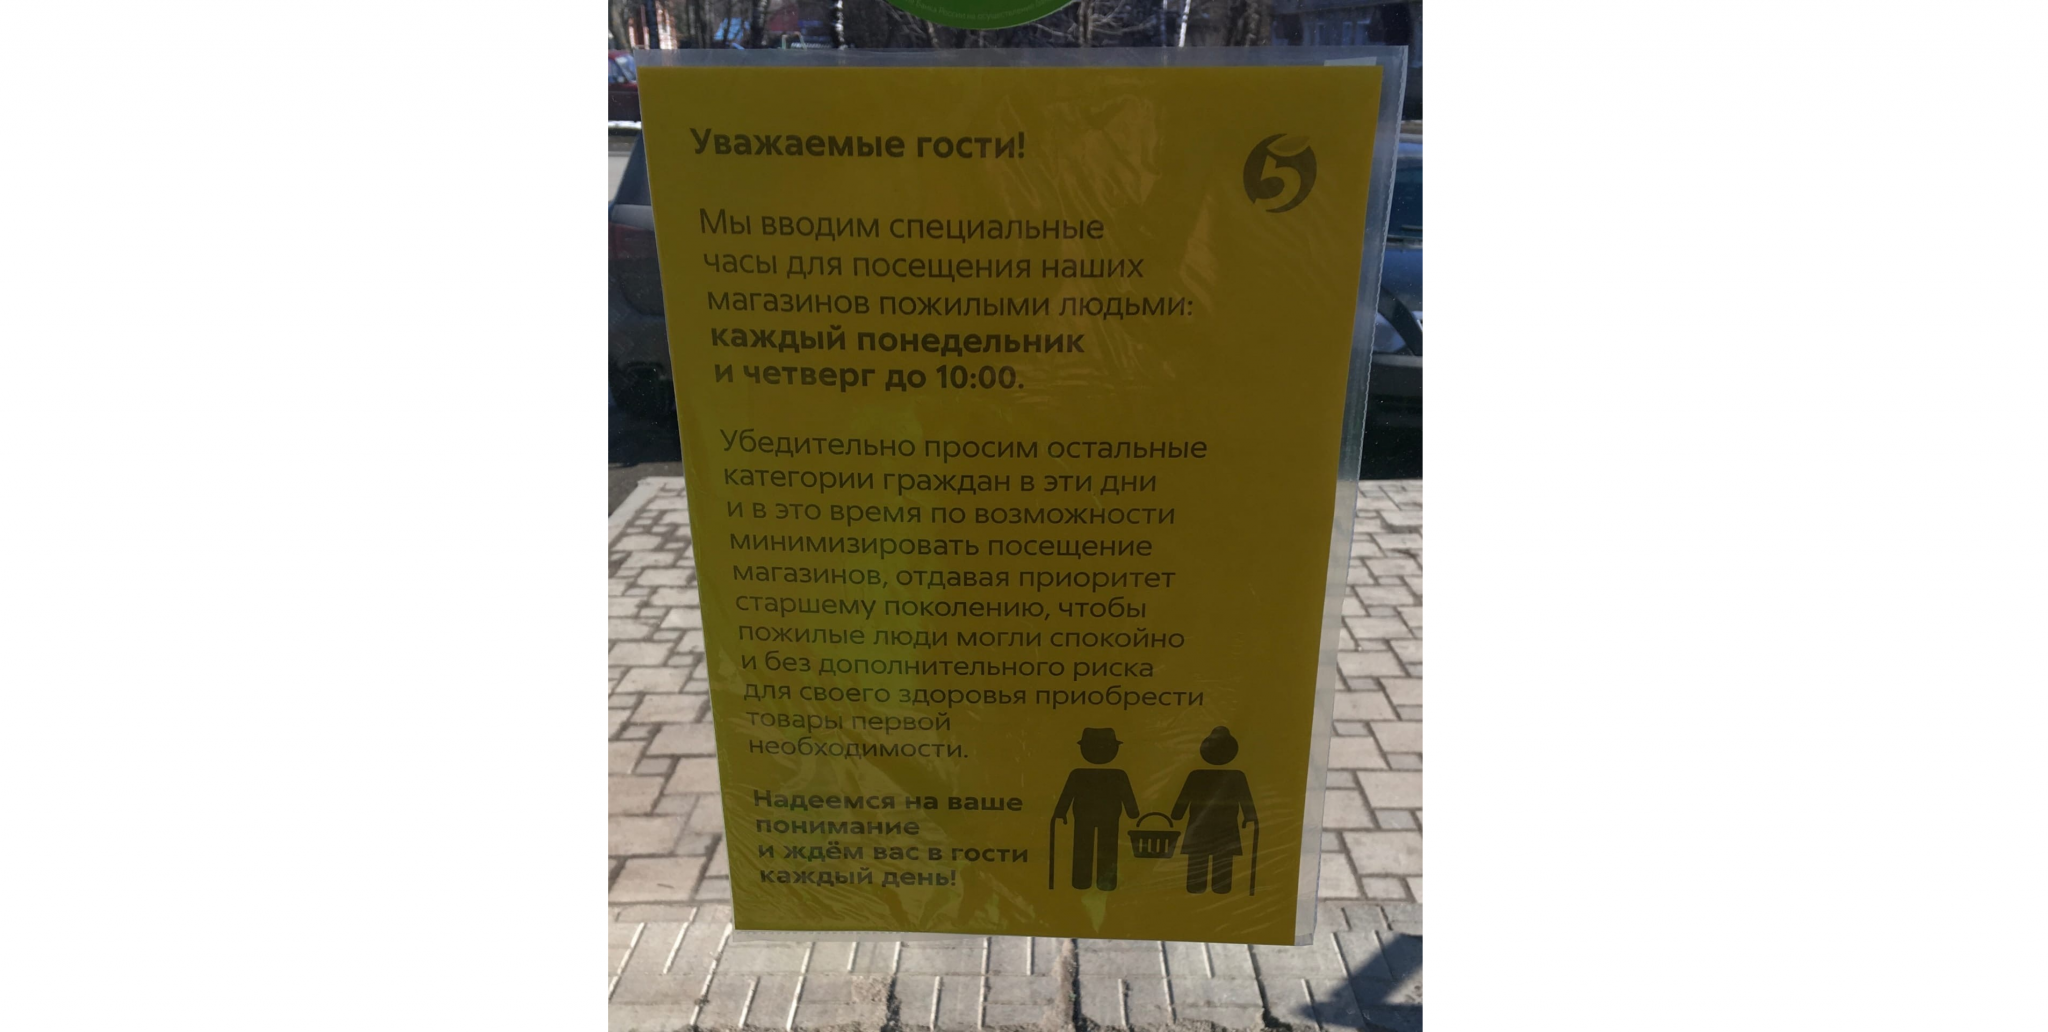 Пенсионерам в Кирово-Чепецке рекомендуют ходить в магазин по расписанию